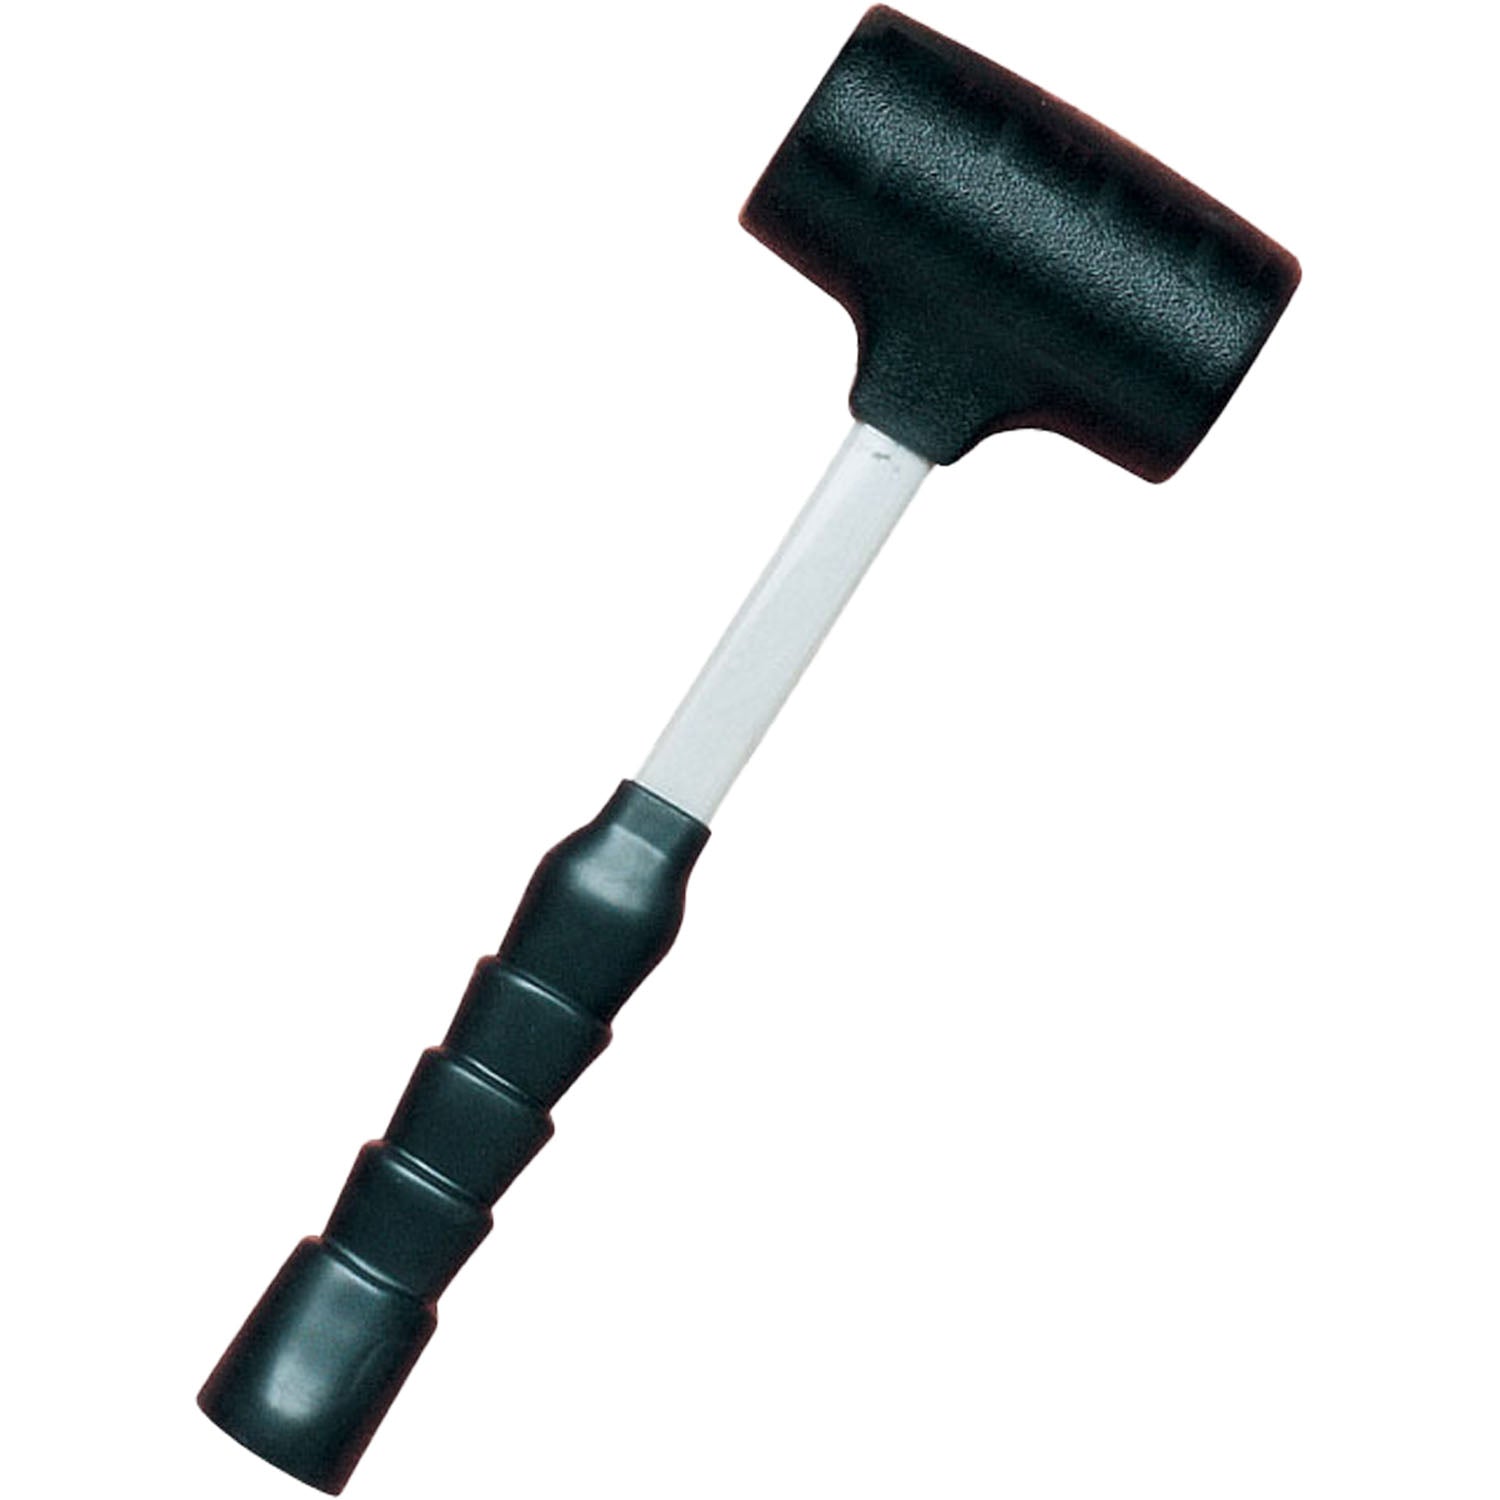 Ken-Tool TG332 35332 12-1/4" 2lb Dead Blow Hammer